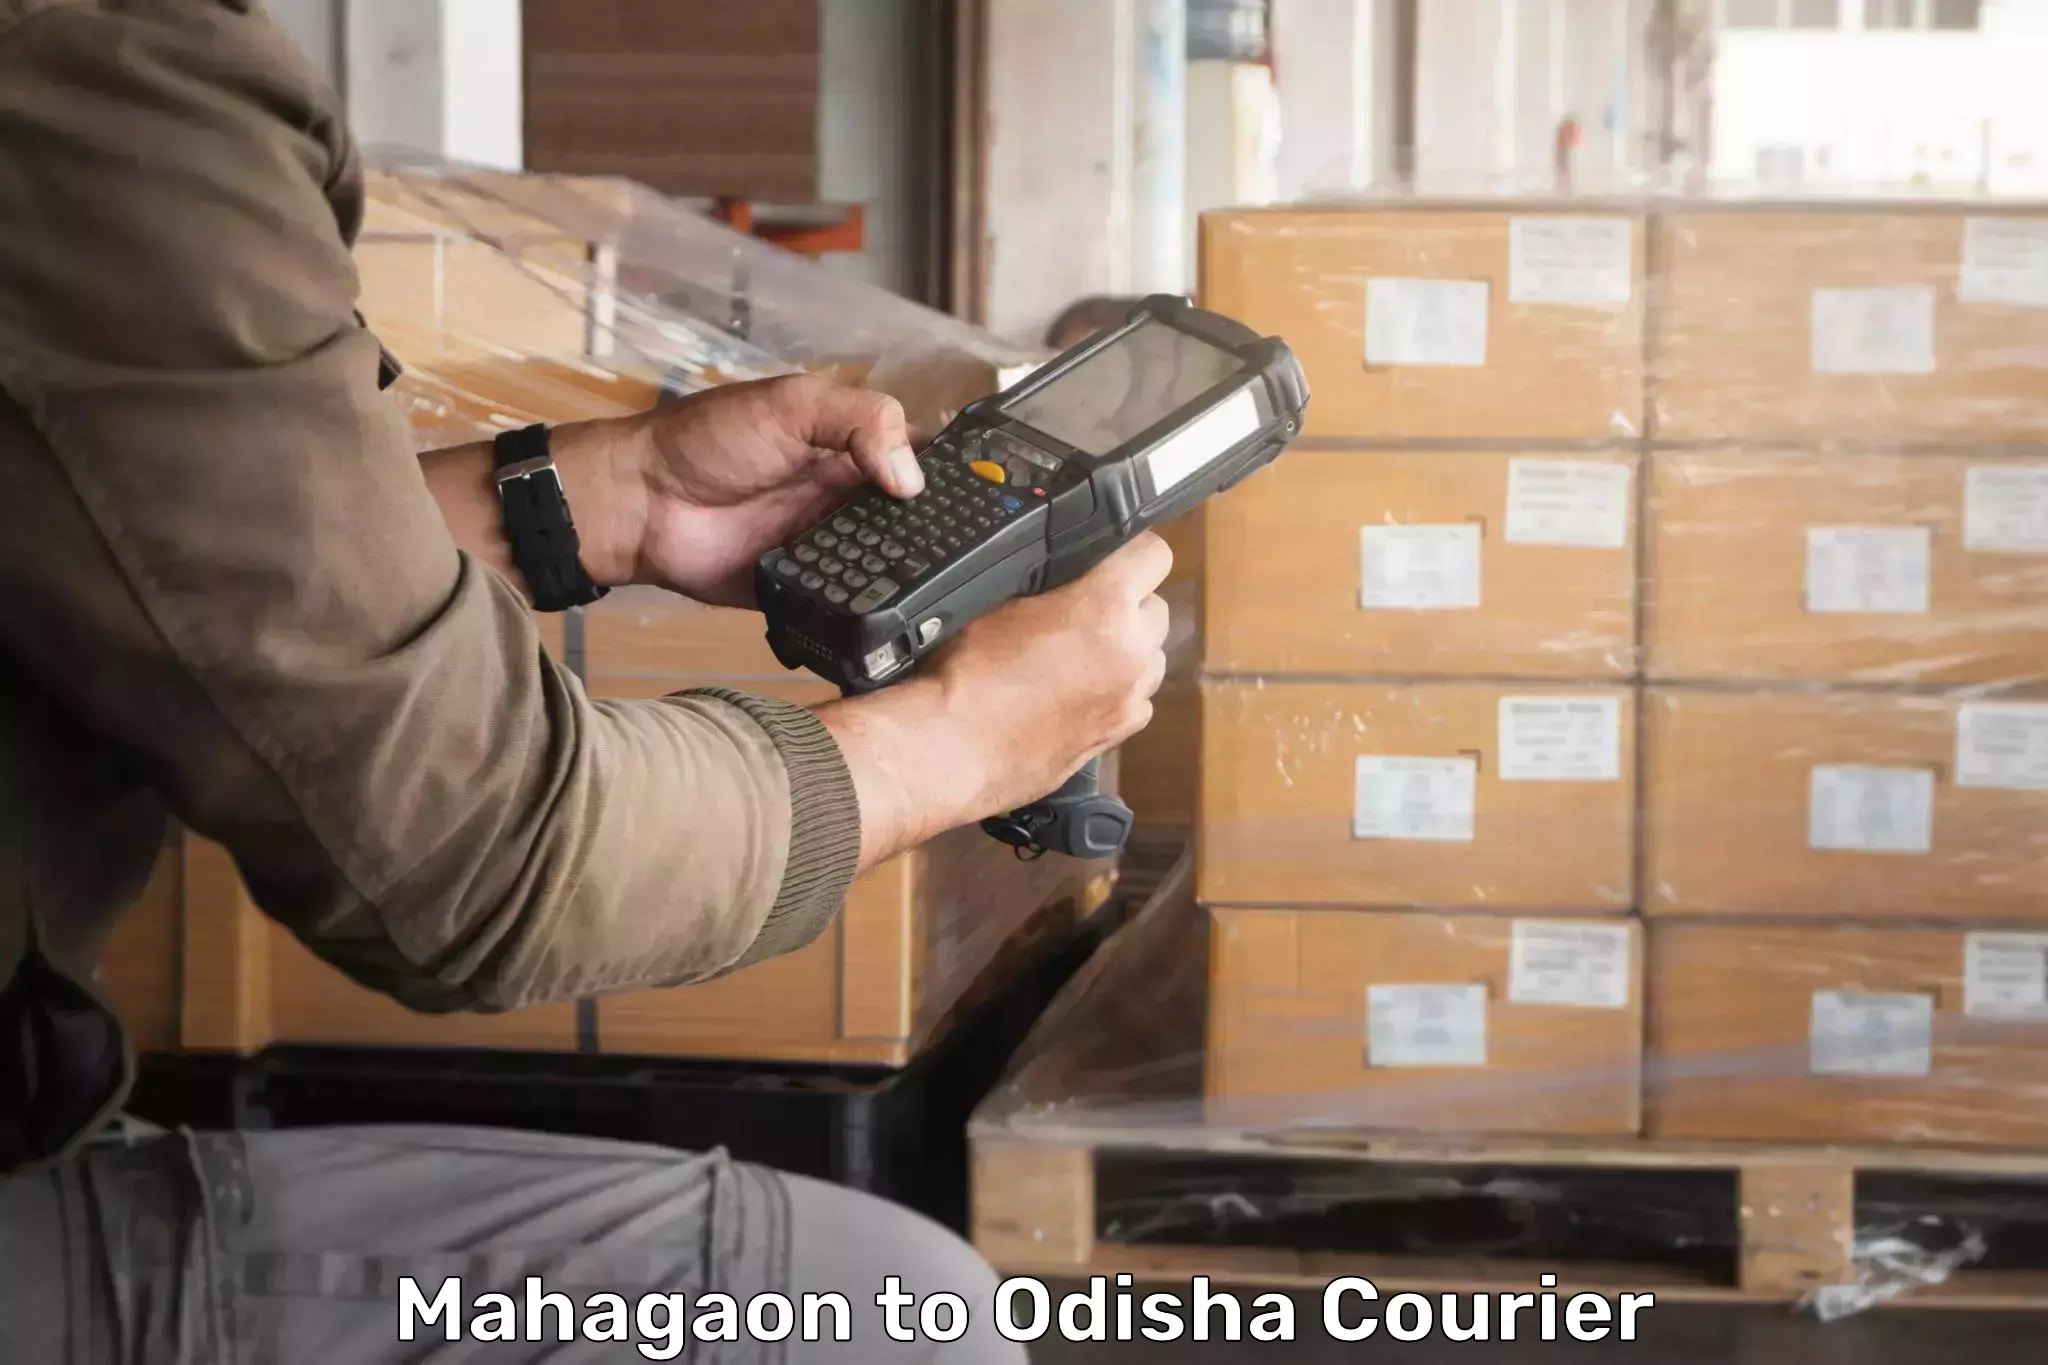 Advanced tracking systems Mahagaon to Odisha